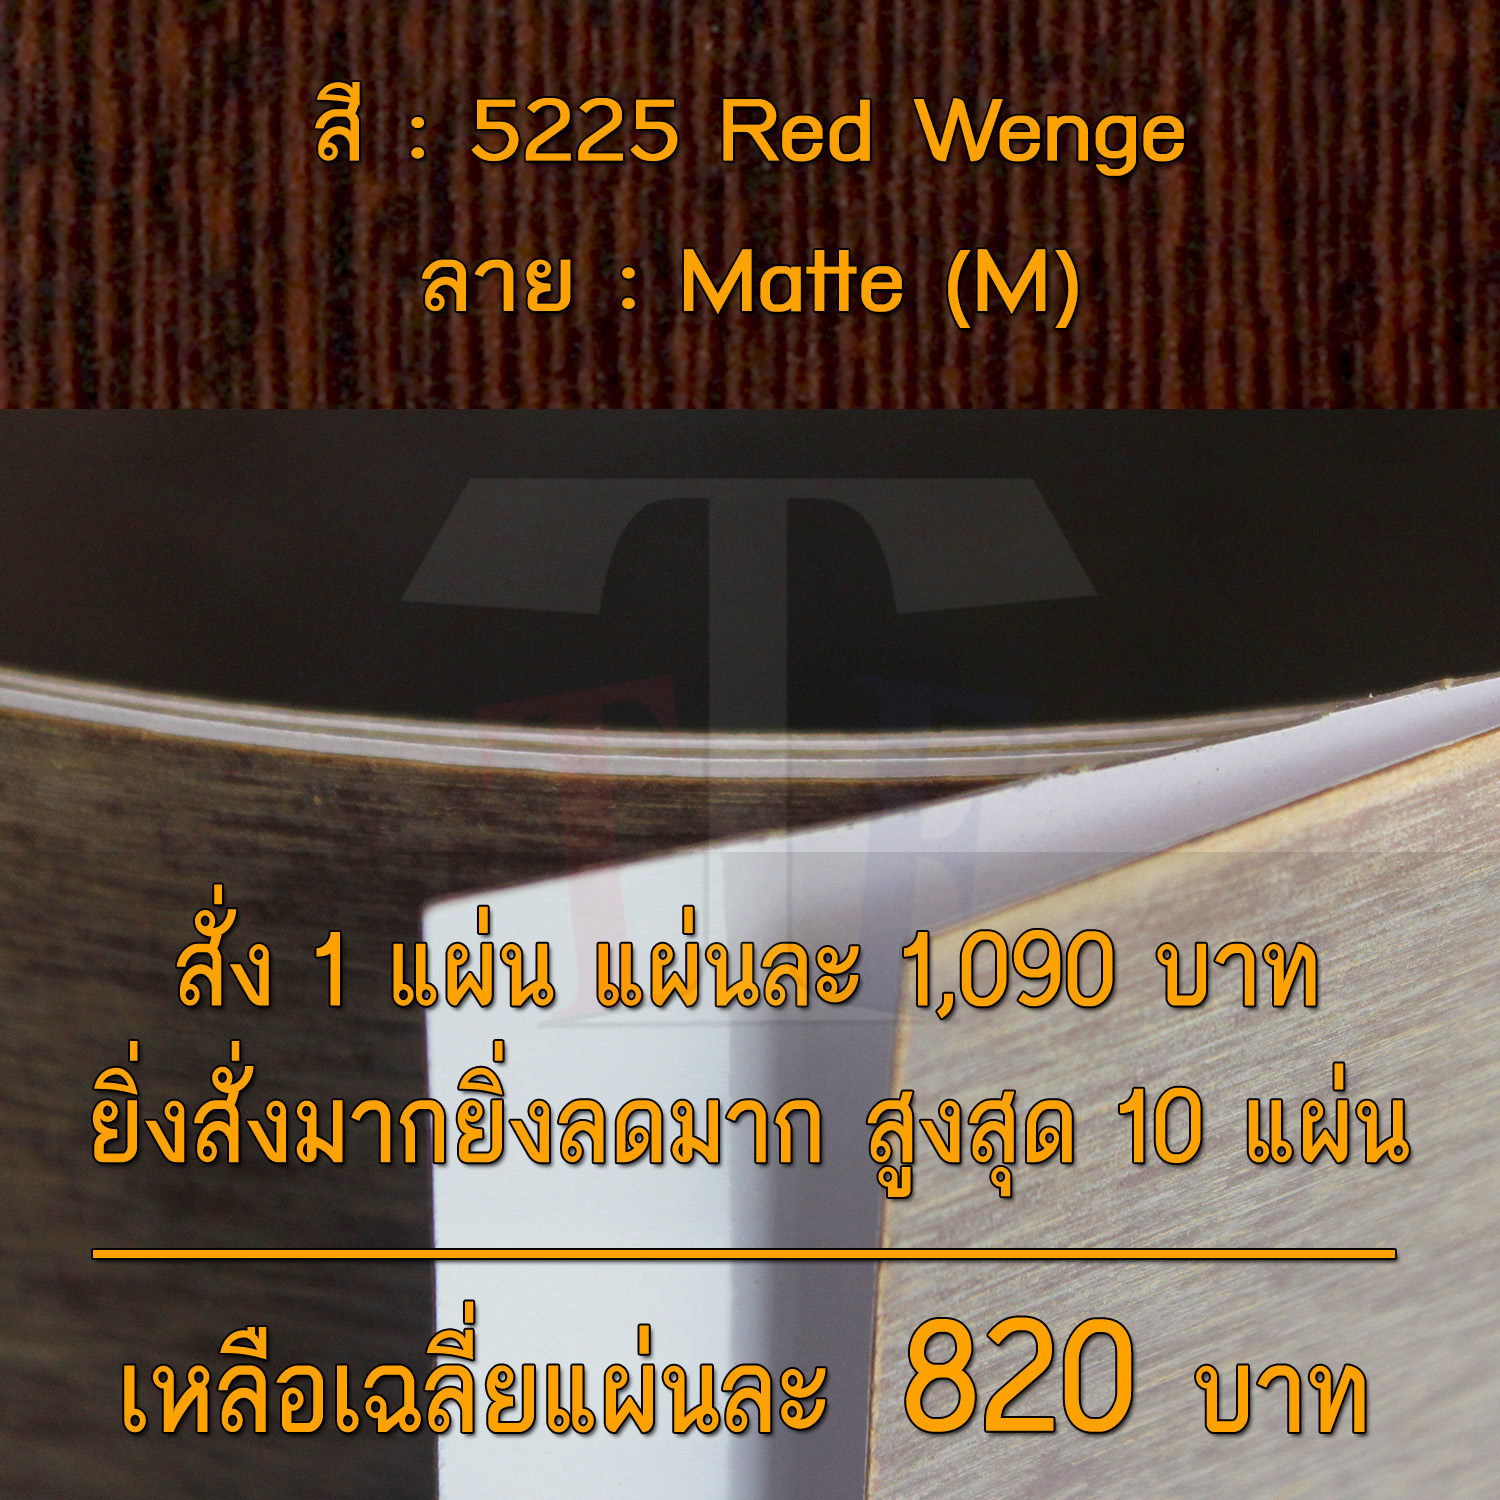 แผ่นโฟเมก้า แผ่นลามิเนต ยี่ห้อ TD Board ลายไม้ รหัส 5225 Red Wenge พื้นผิวลาย Matte (M) ขนาด 1220 x 2440 มม. หนา 0.70 มม. ใช้สำหรับงานตกแต่งภายใน งานปิดผิวเฟอร์นิเจอร์ ผนัง และอื่นๆ เพื่อเพิ่มความสวยงาม formica laminate 5225M